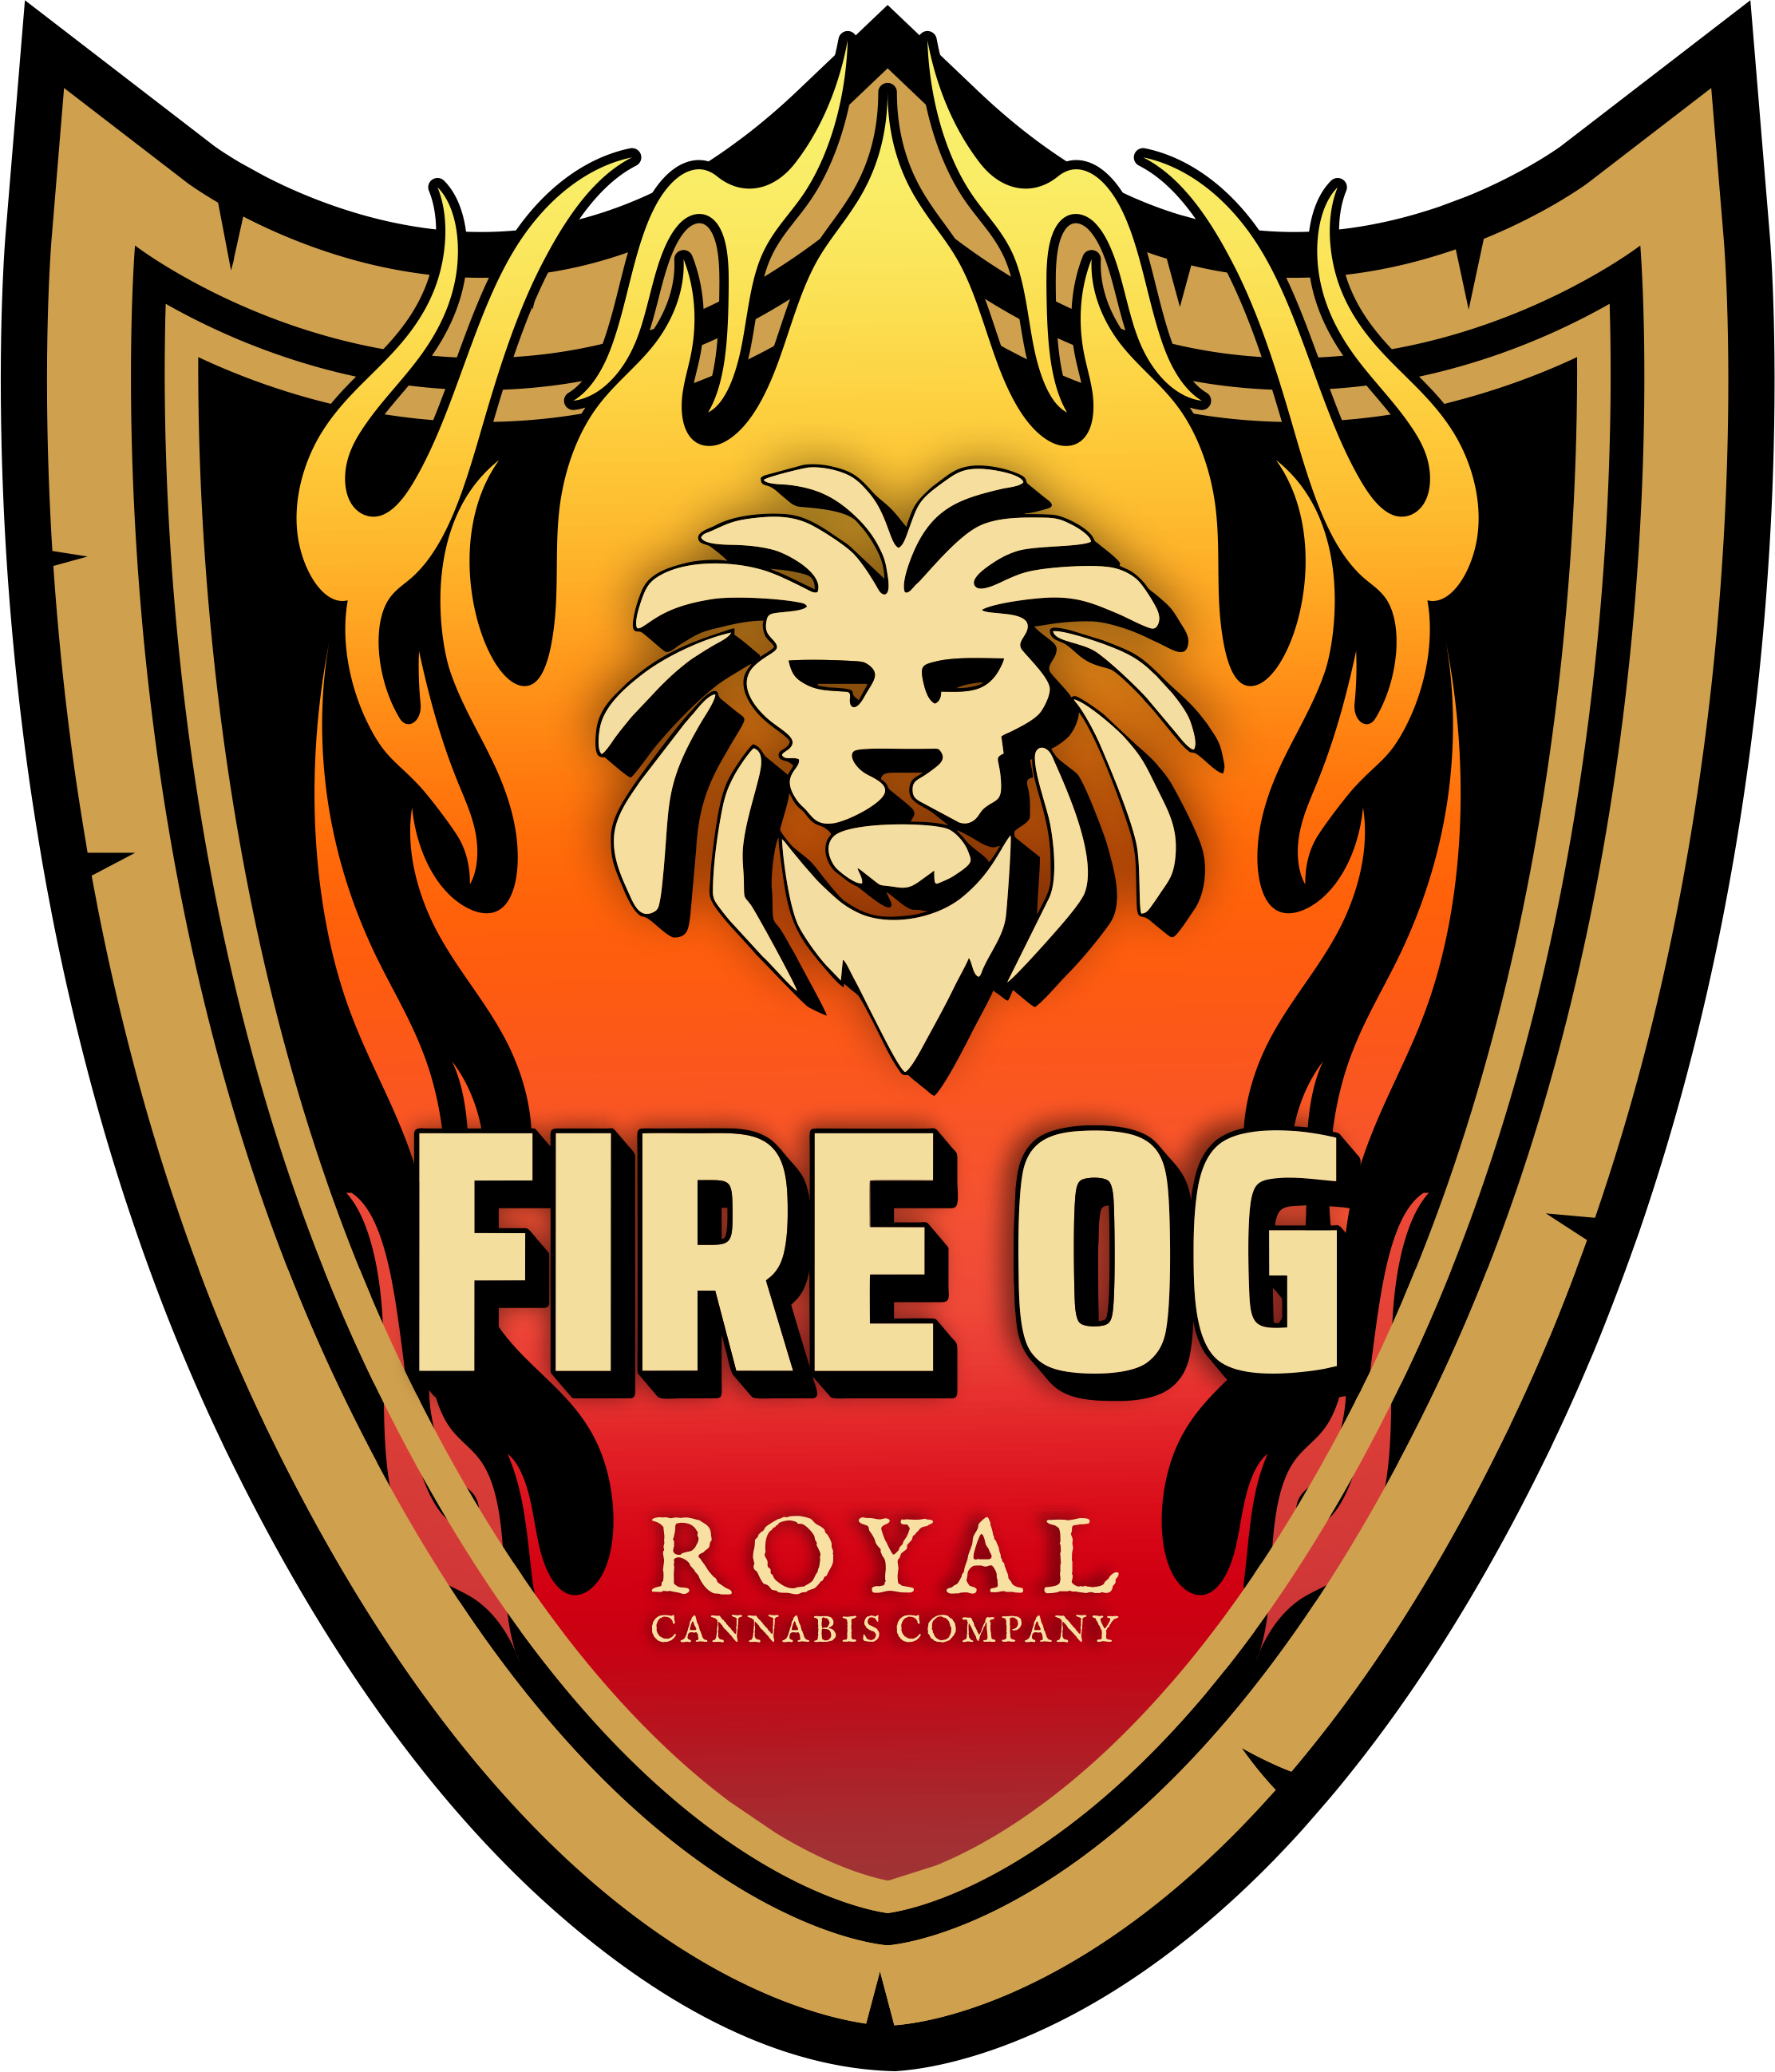 No Logo for Fire OG